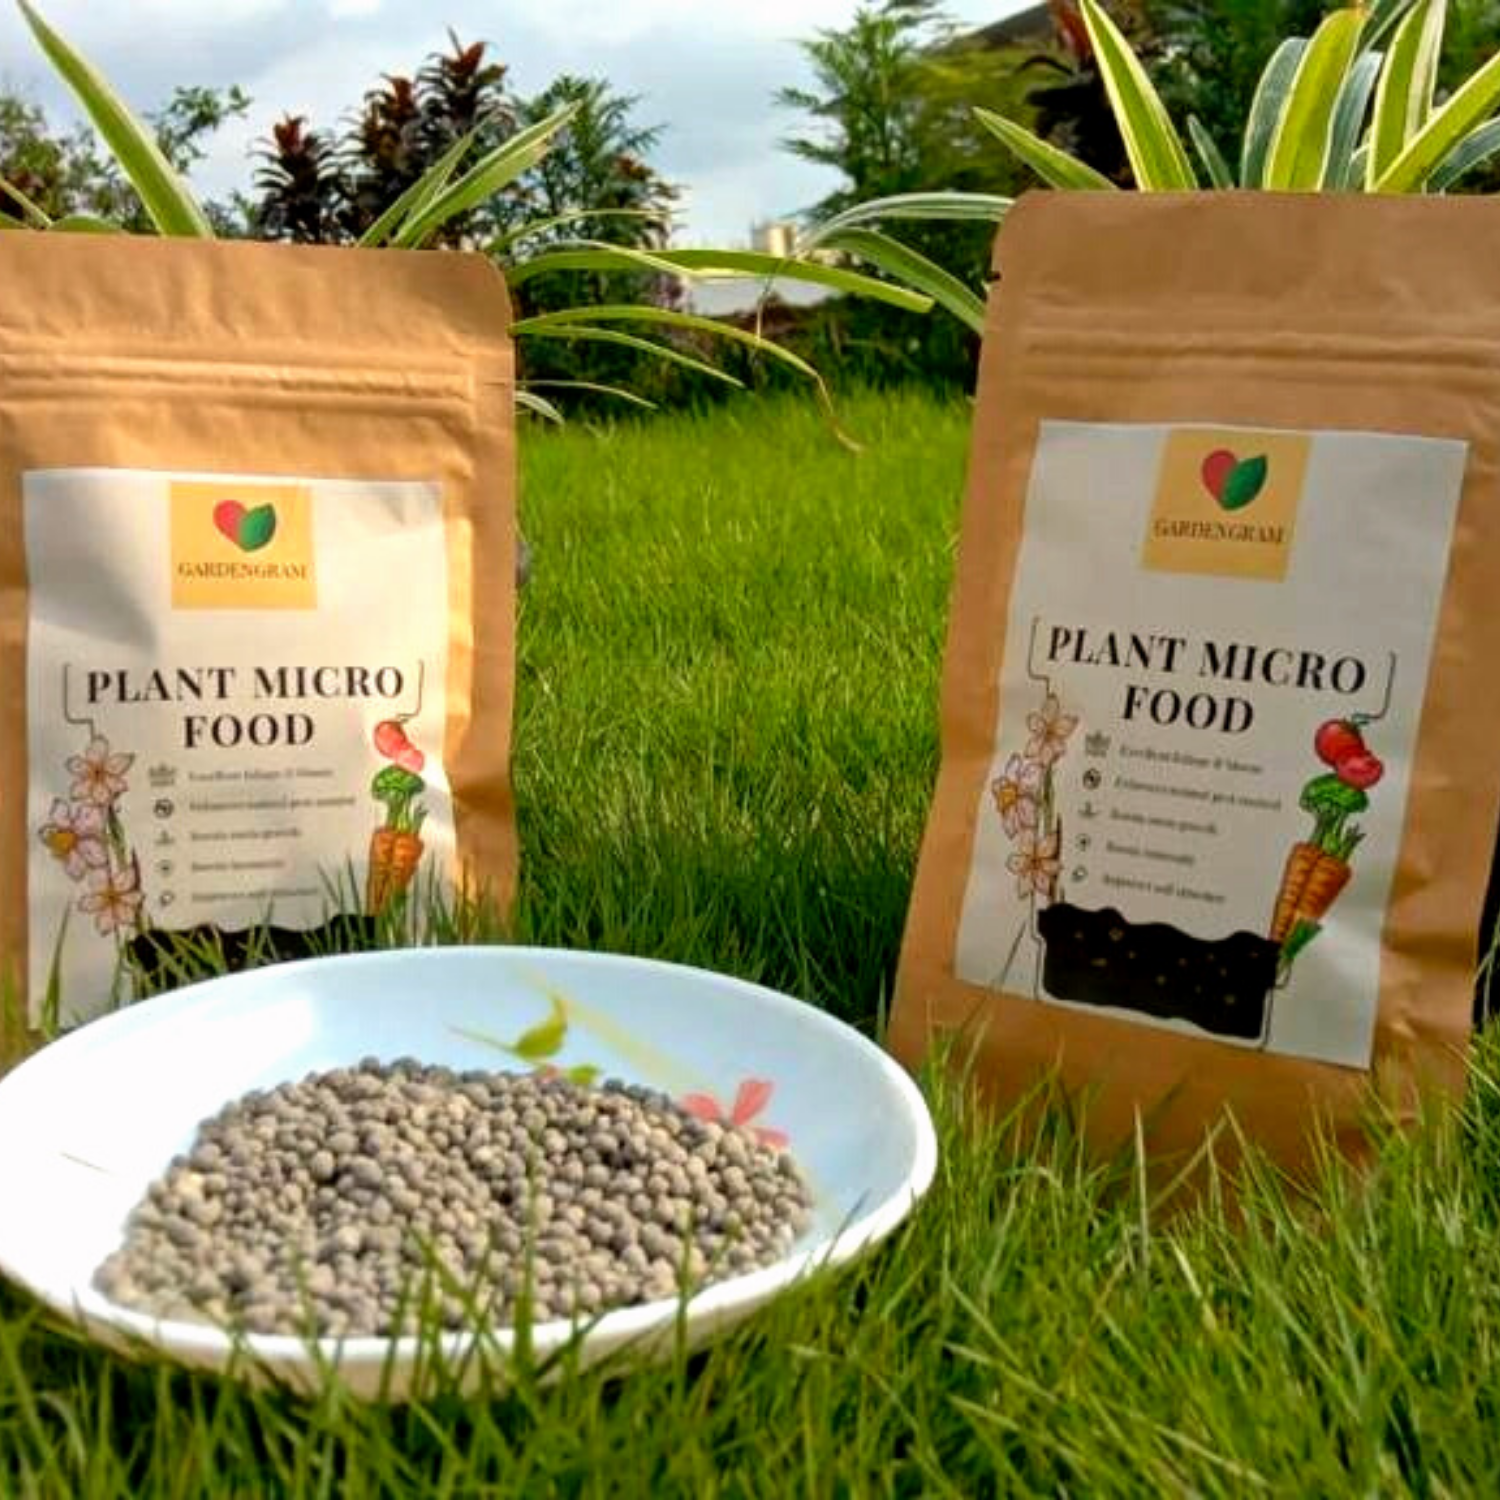 Plant fertiliser for gardening purpose by Gradengram